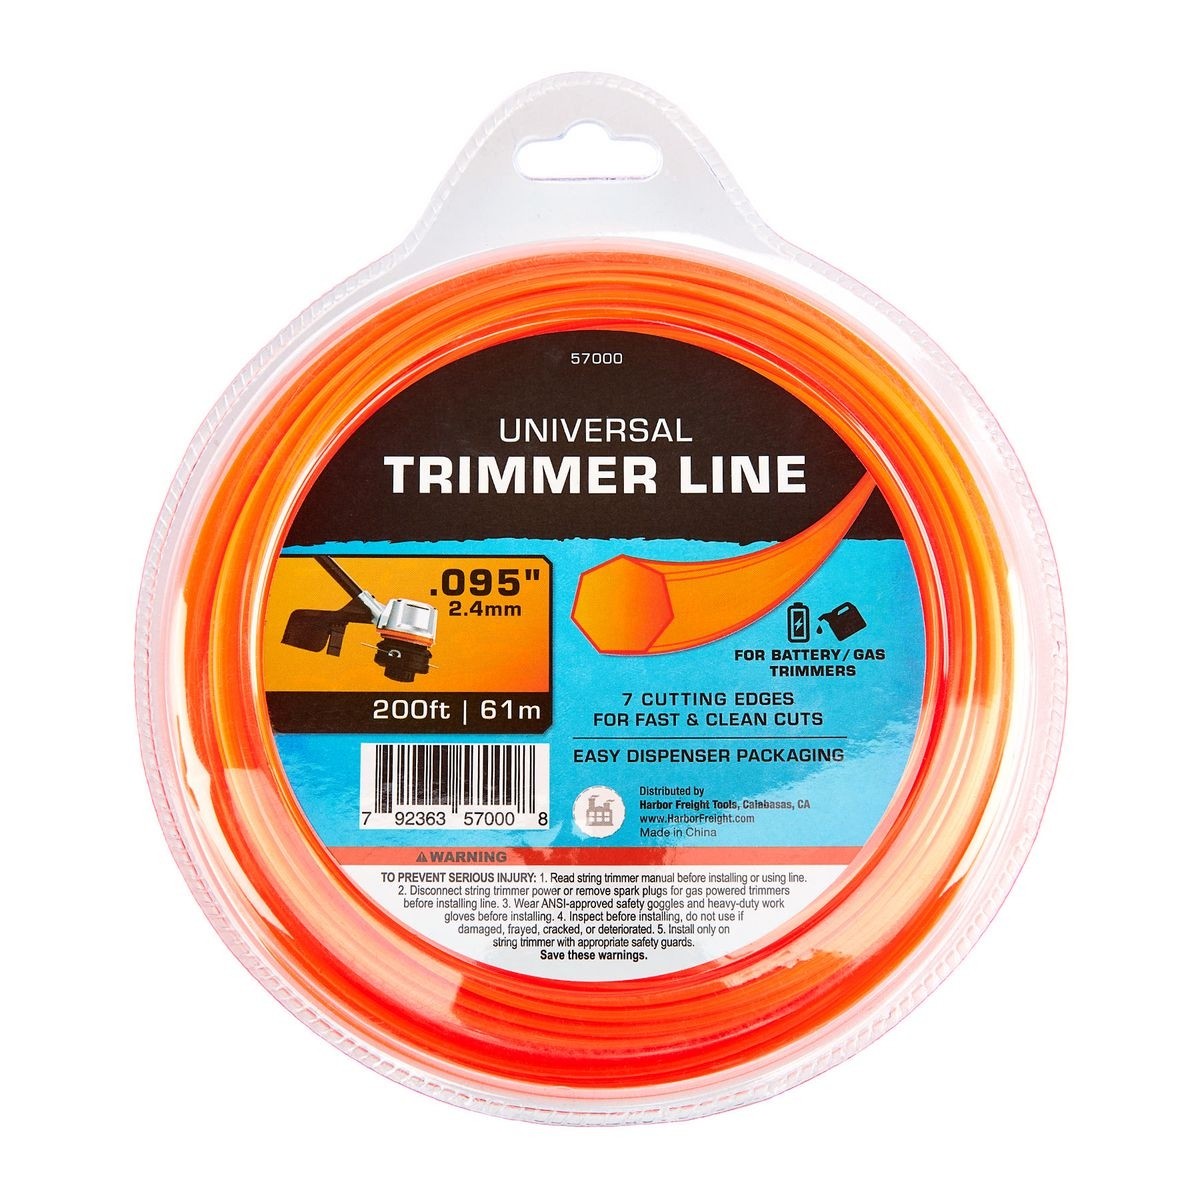 best string trimmer line